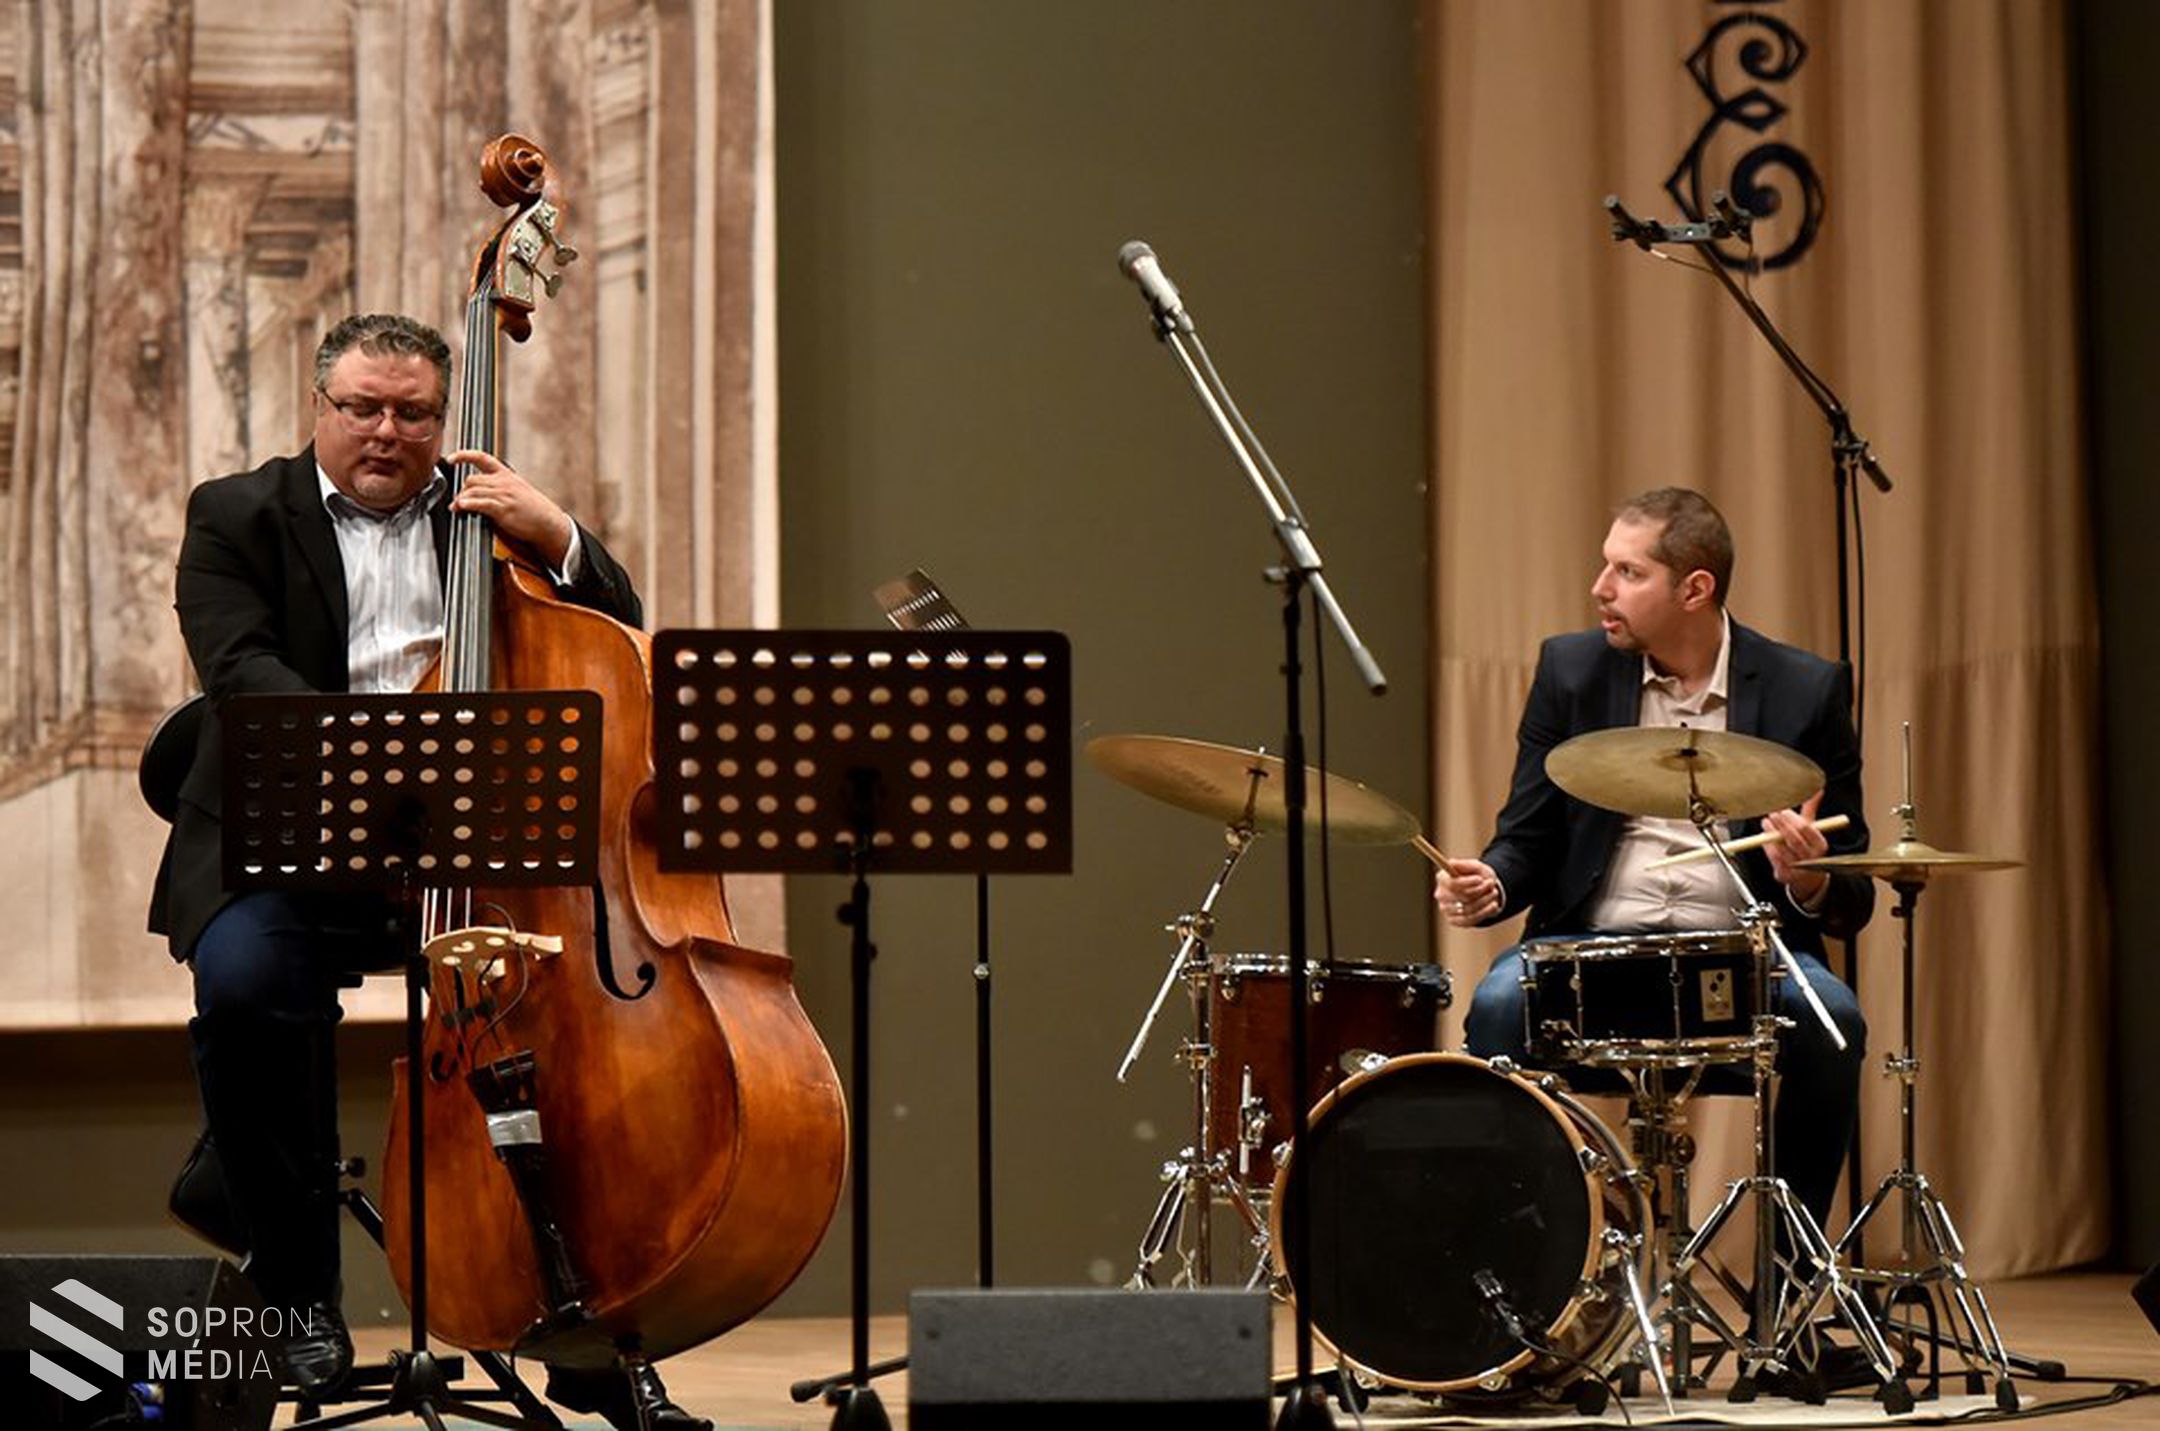 Zenetörténeti kalandozás jazz köntösben Eszterházán